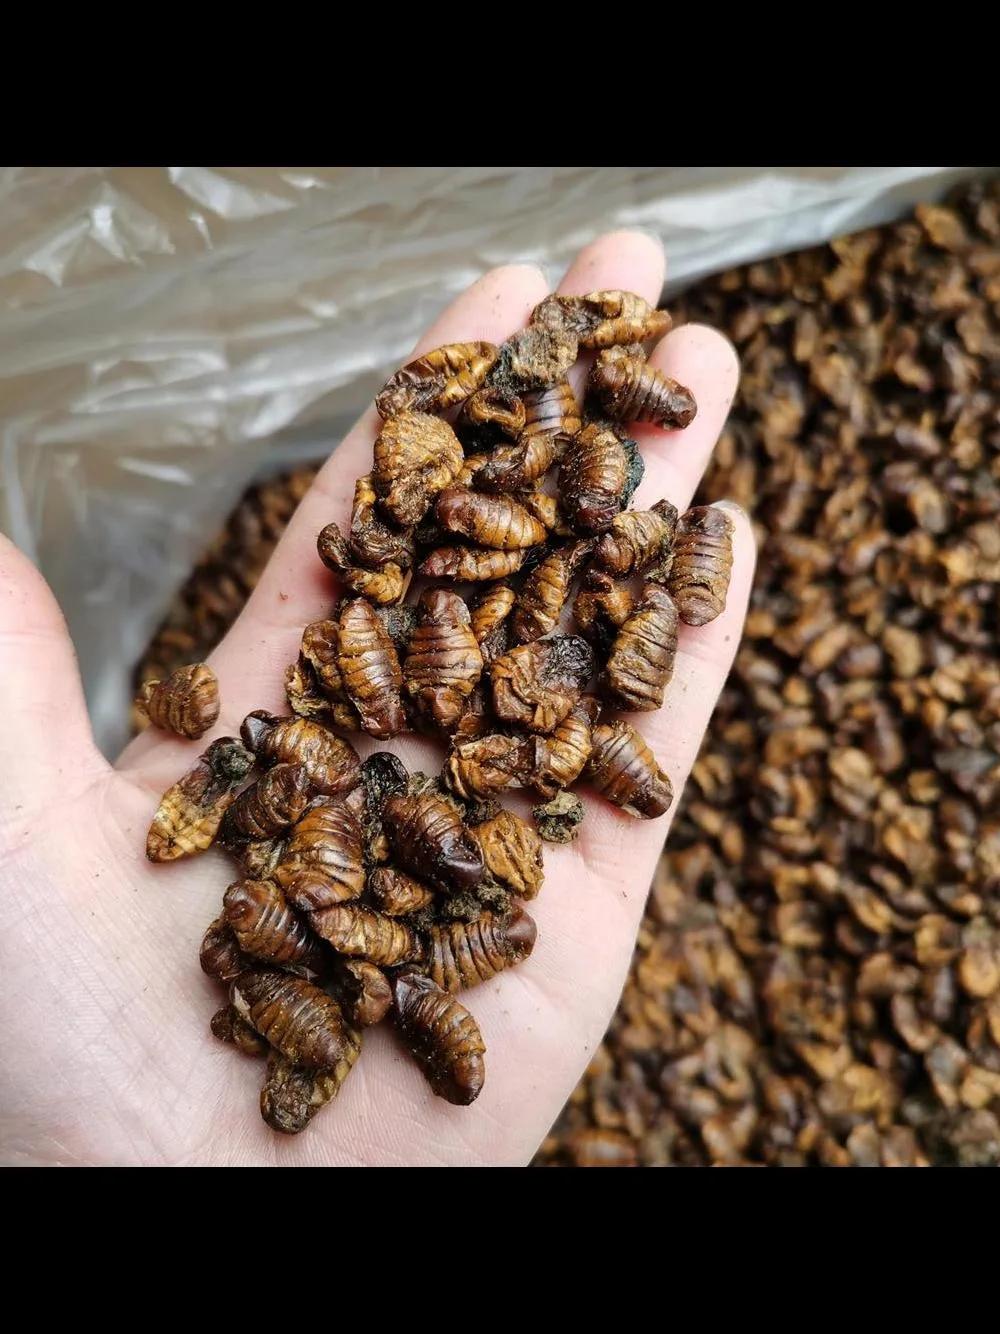 Animal Pet Food Silkworm Pupae